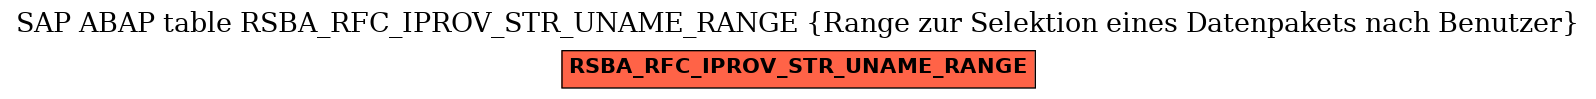 E-R Diagram for table RSBA_RFC_IPROV_STR_UNAME_RANGE (Range zur Selektion eines Datenpakets nach Benutzer)